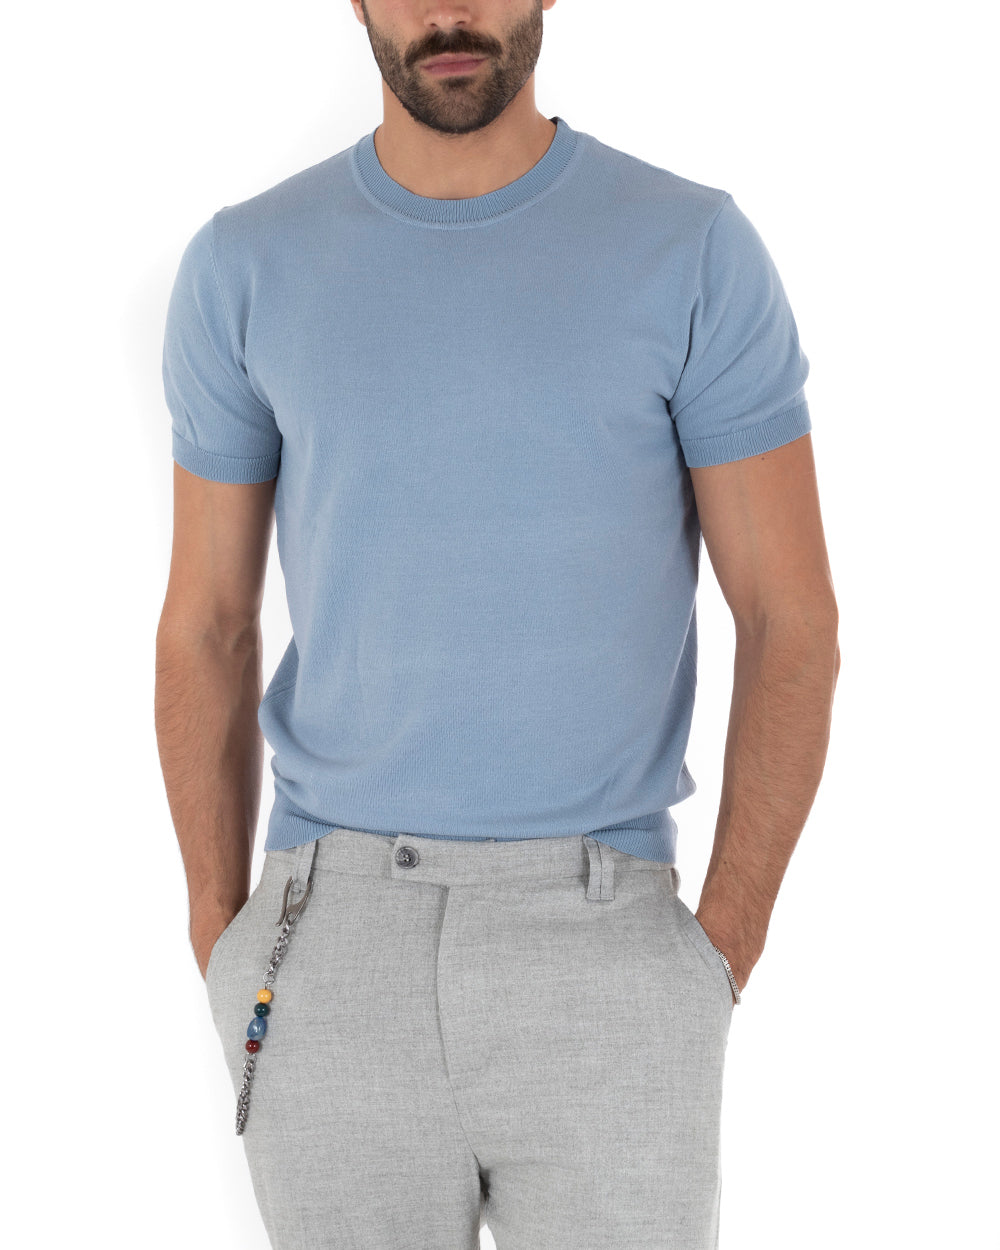 T-Shirt Uomo Manica Corta Tinta Unita Polvere Girocollo Filo Casual GIOSAL-TS3052A